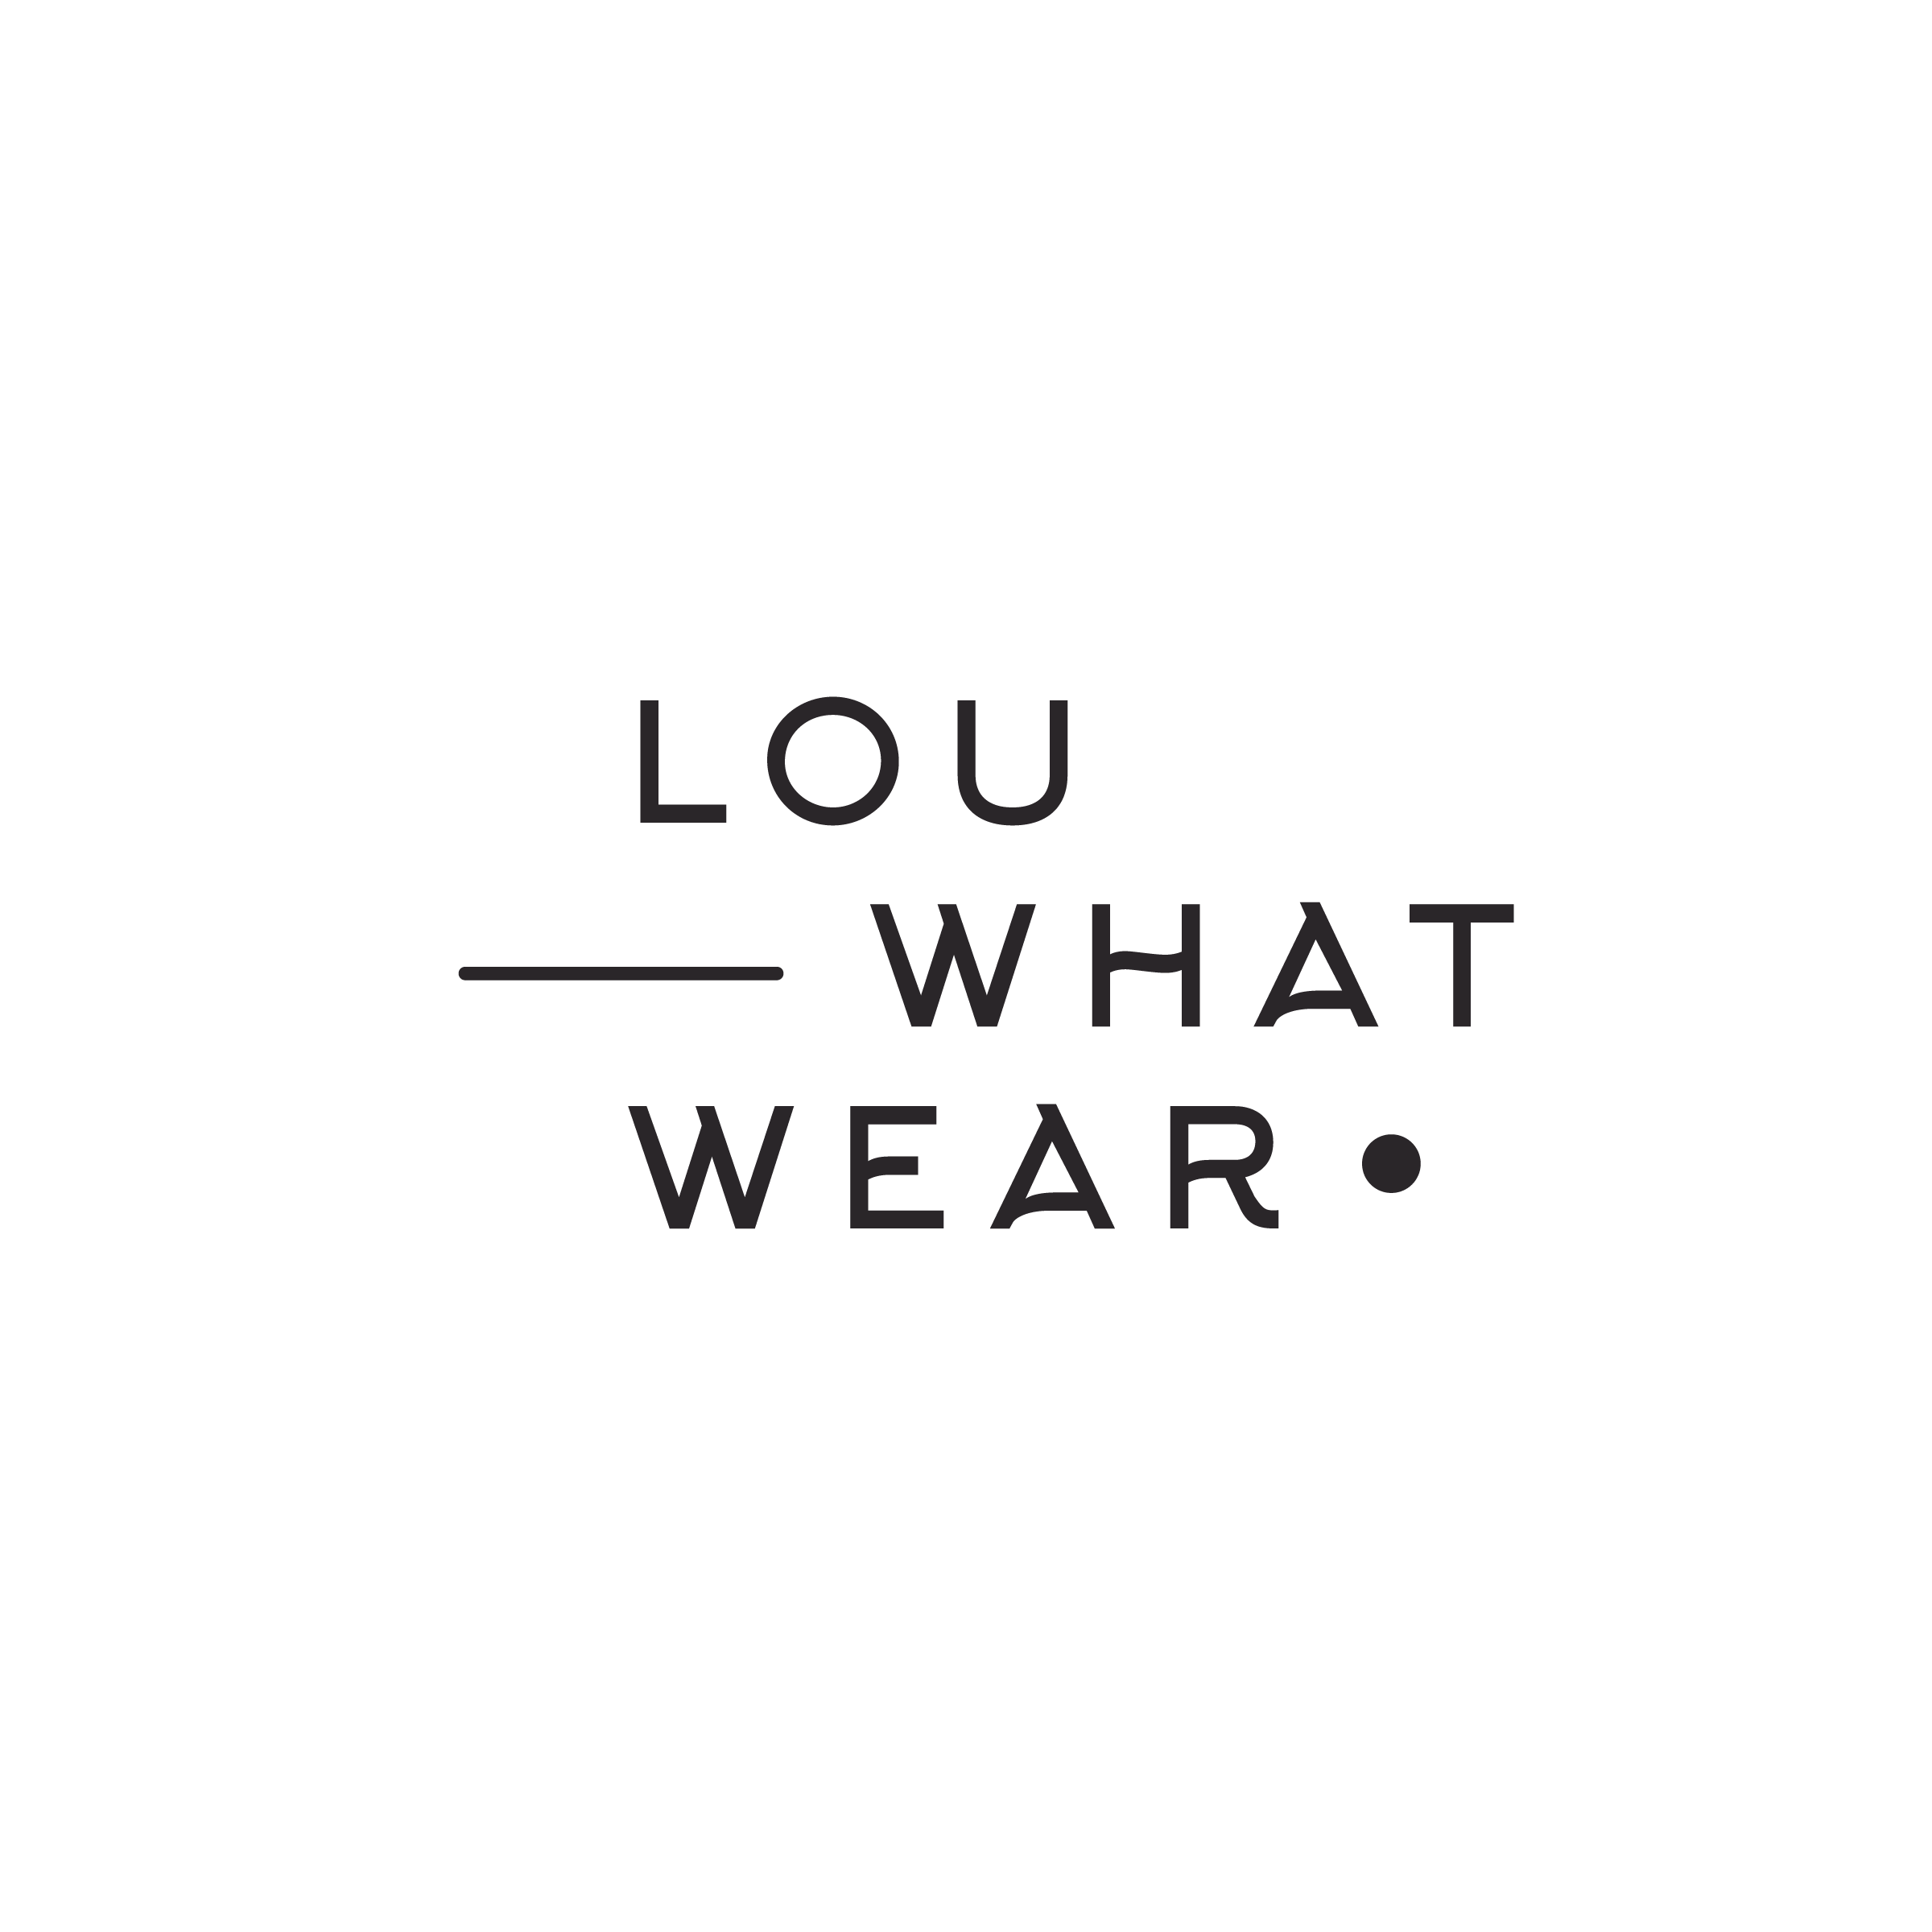 LWW_logo_bw15 * Lou What Wear